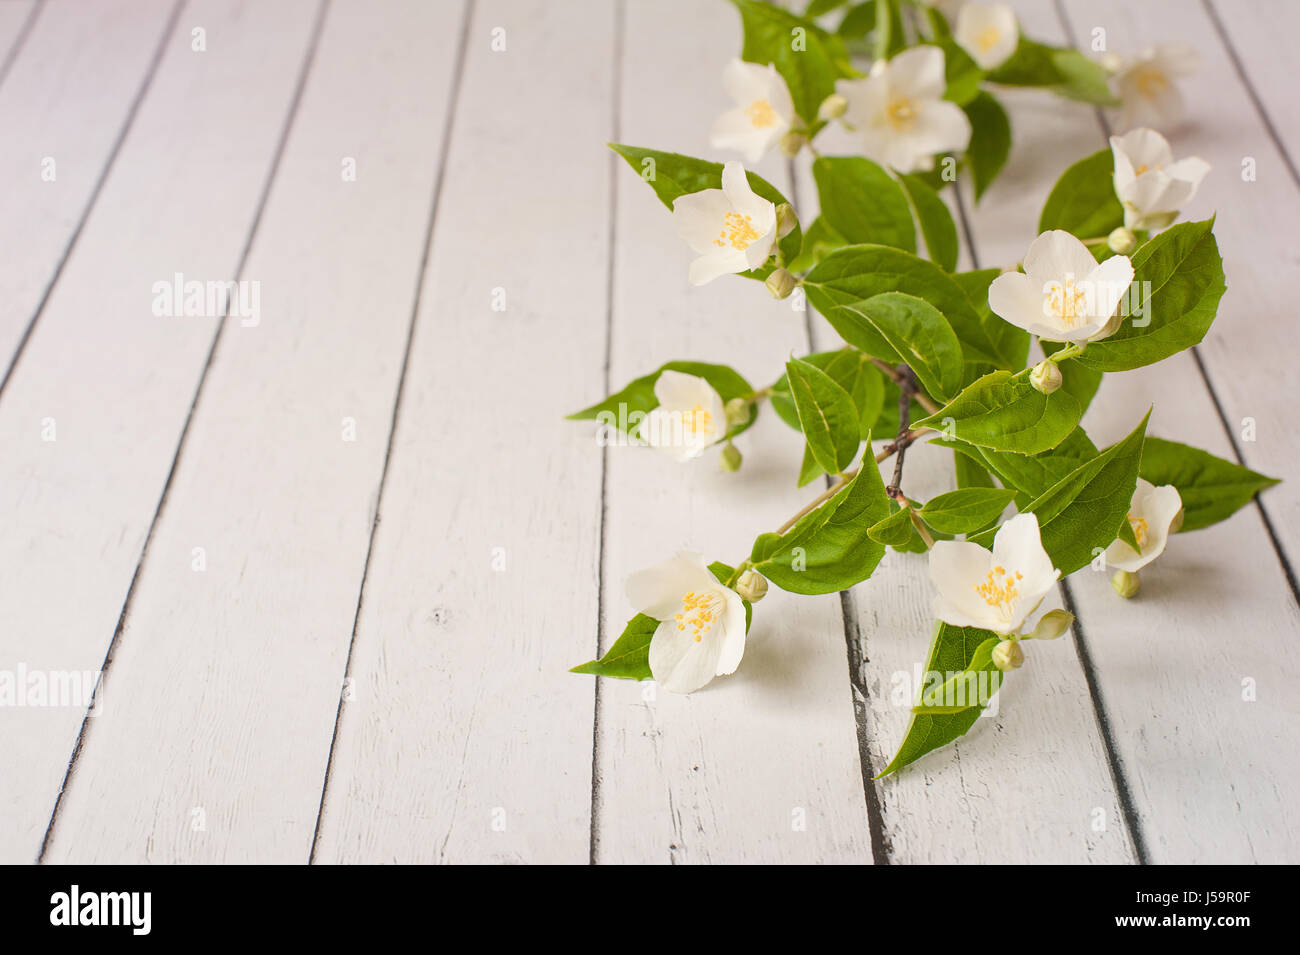 Jazmín blanco flores acostarse sobre un fondo de madera. Tarjeta de invitación de la boda. Espacio para el texto y el diseño. Foto de stock